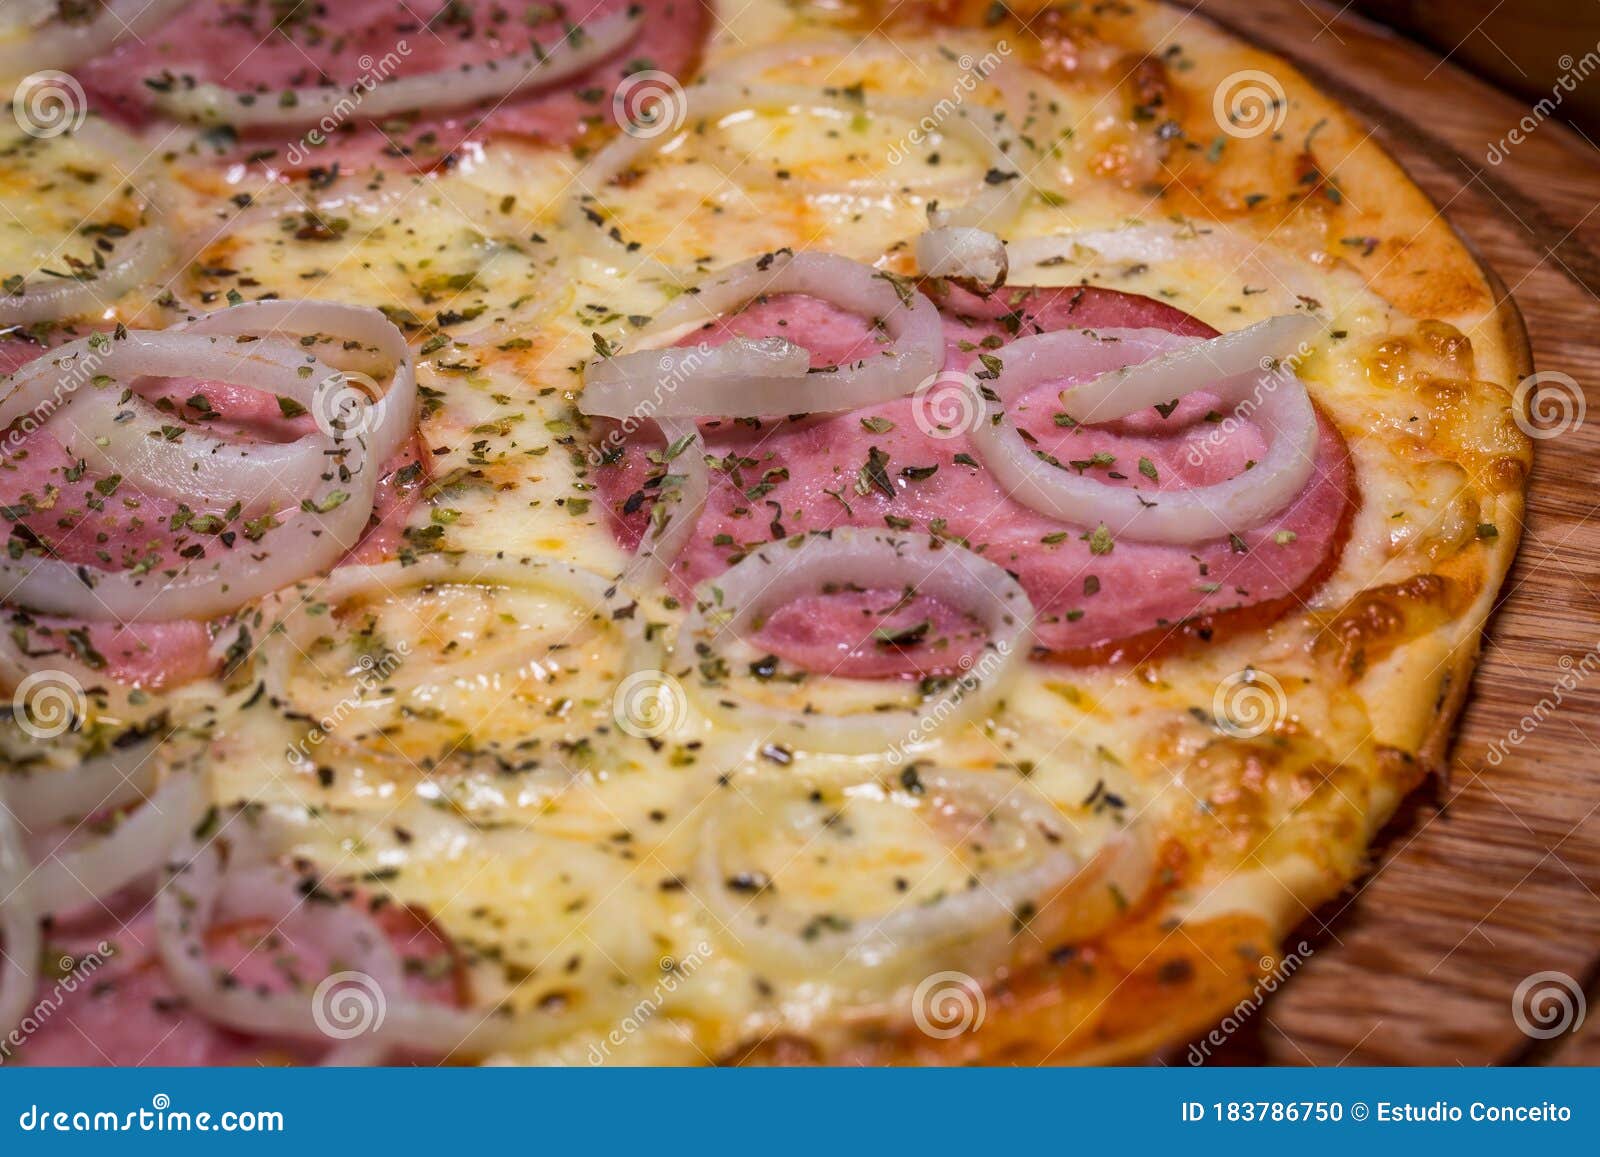 Pizza Mit Schinken Und Zwiebel Stockfoto - Bild von anlieferung ...